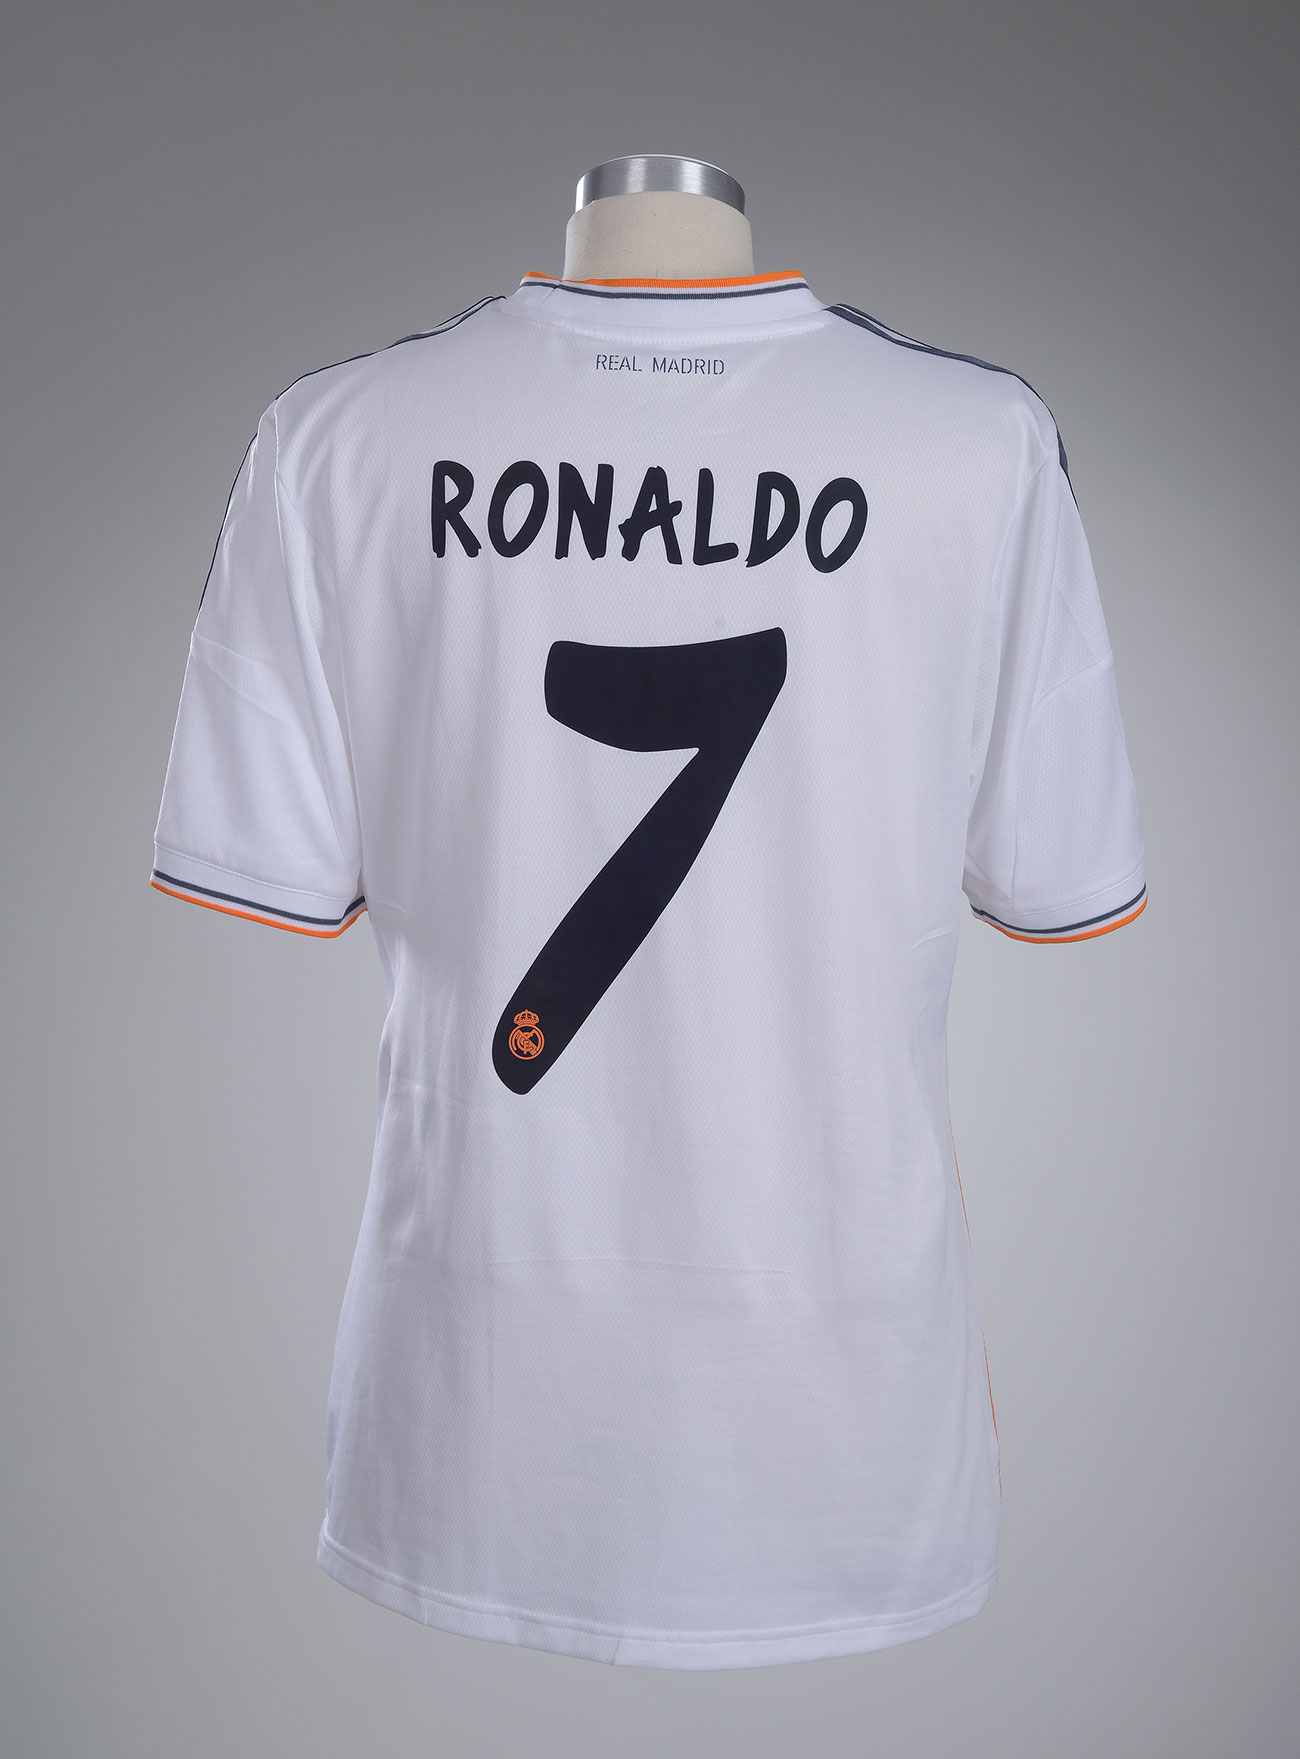 Maillot porté par Cristiano Ronaldo lors de la saison 2013-2014 du Real Madrid, 2013 – Mucem © Mucem Yves Inchierman